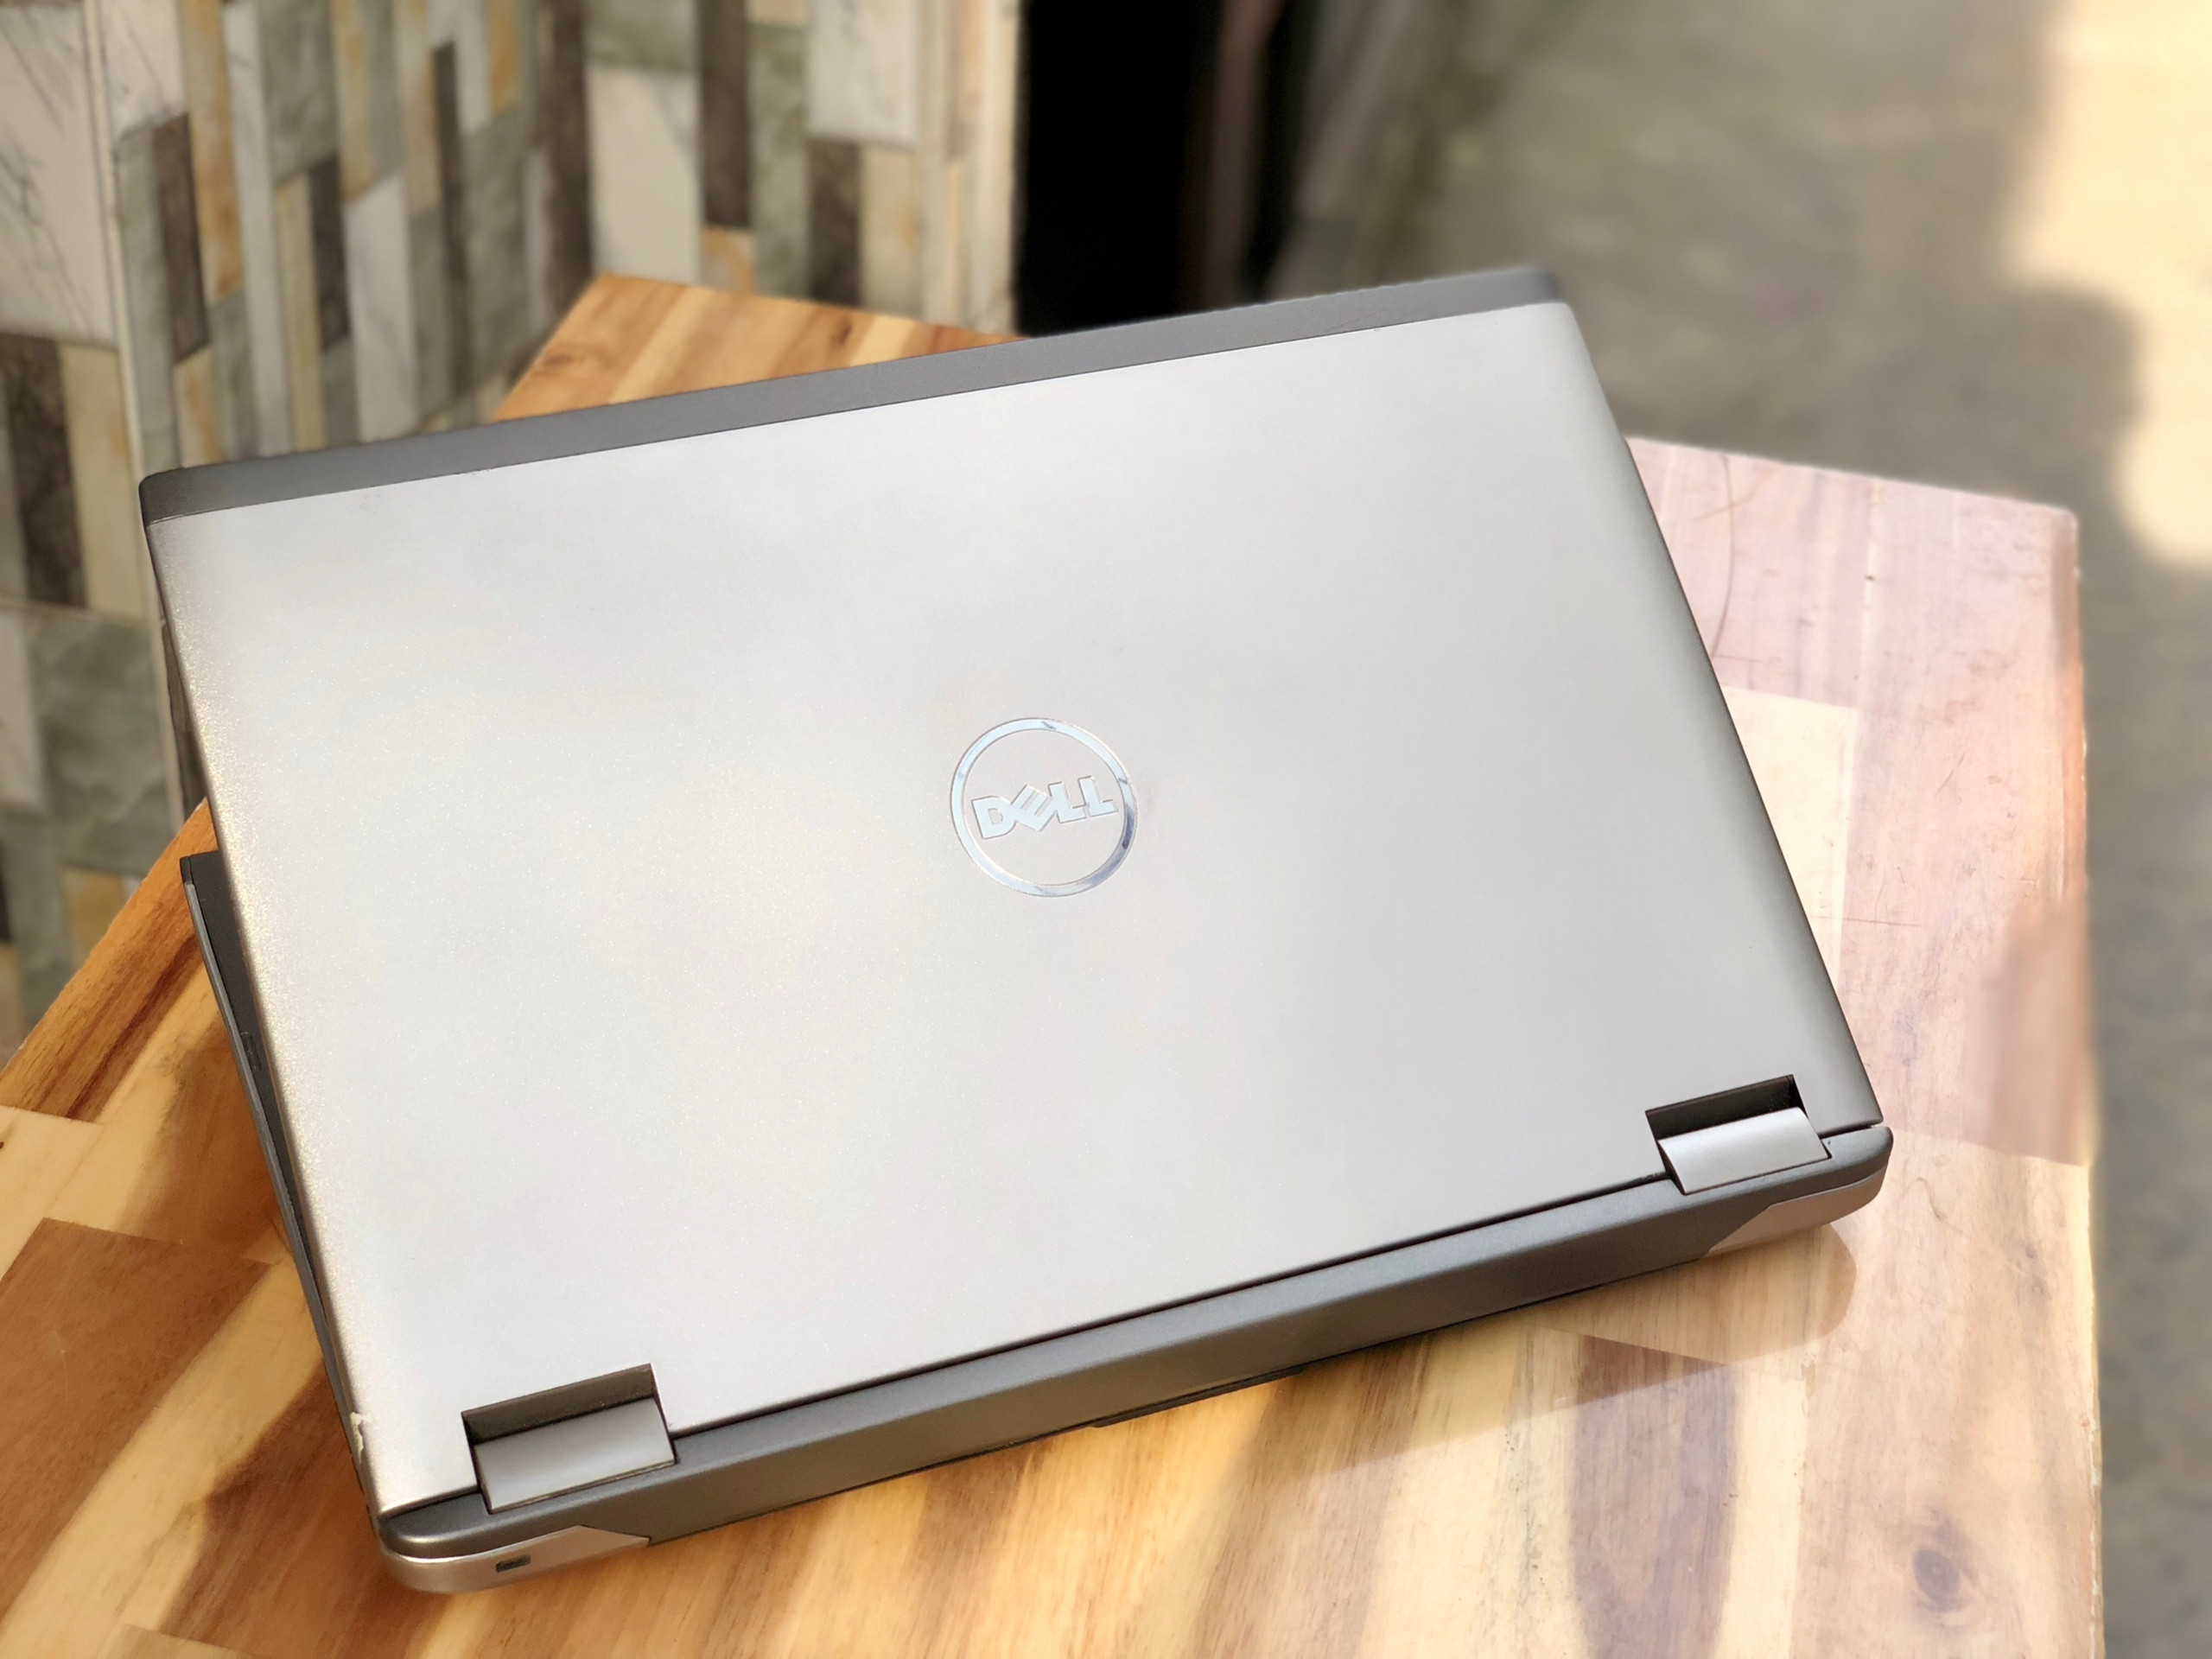 Laptop Dell Vostro 3560, i5 3230M 4G 500G Vga 2G Đẹp zin 100% Giá rẻ4